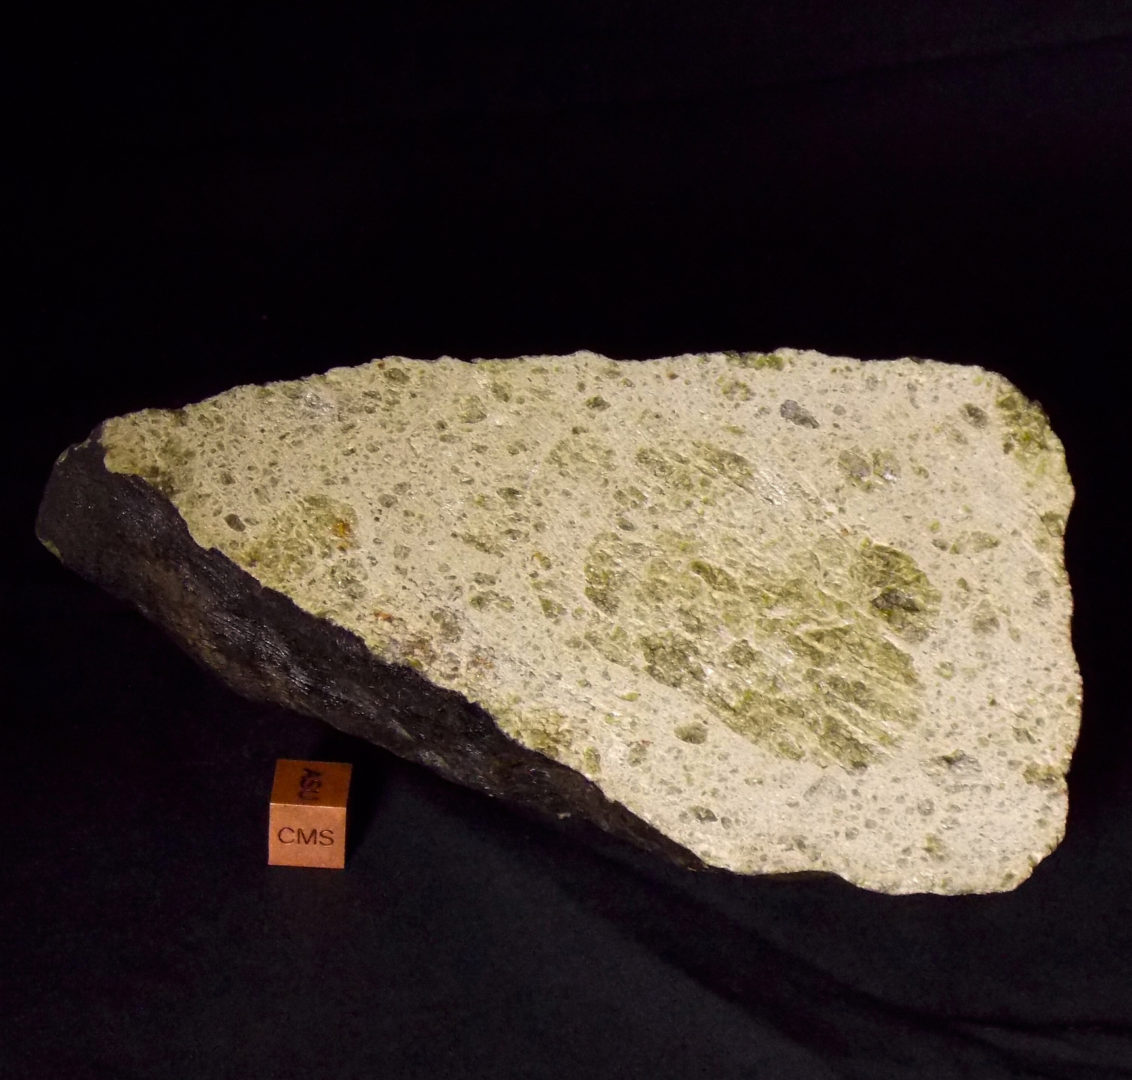 Johnstown meteorite